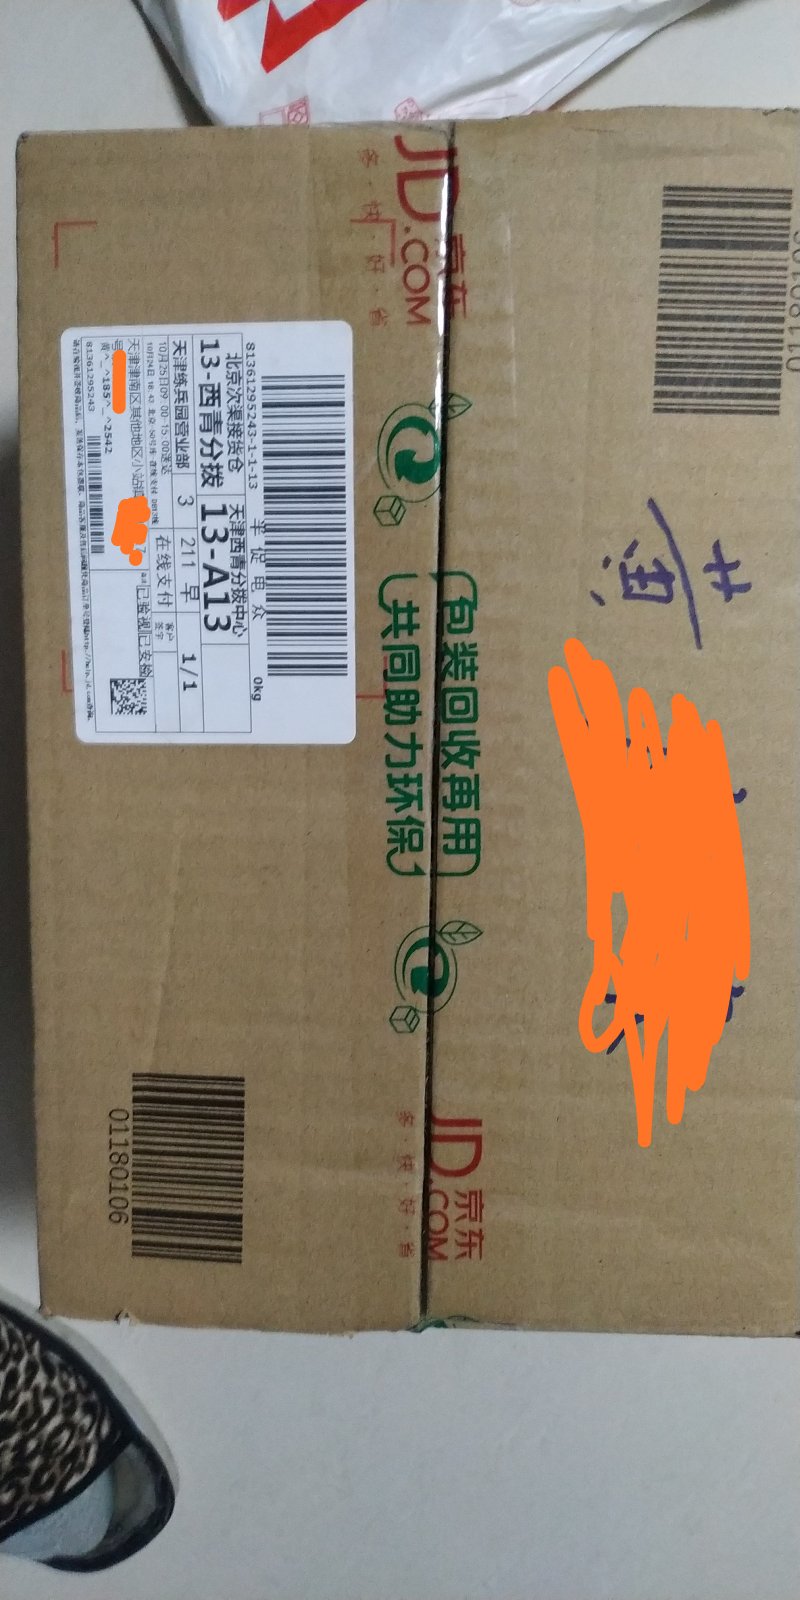 这个包装，箱子是好评，但是为什么要把我的名字写在包装上呢，不是说不会透露用户个人信息么？